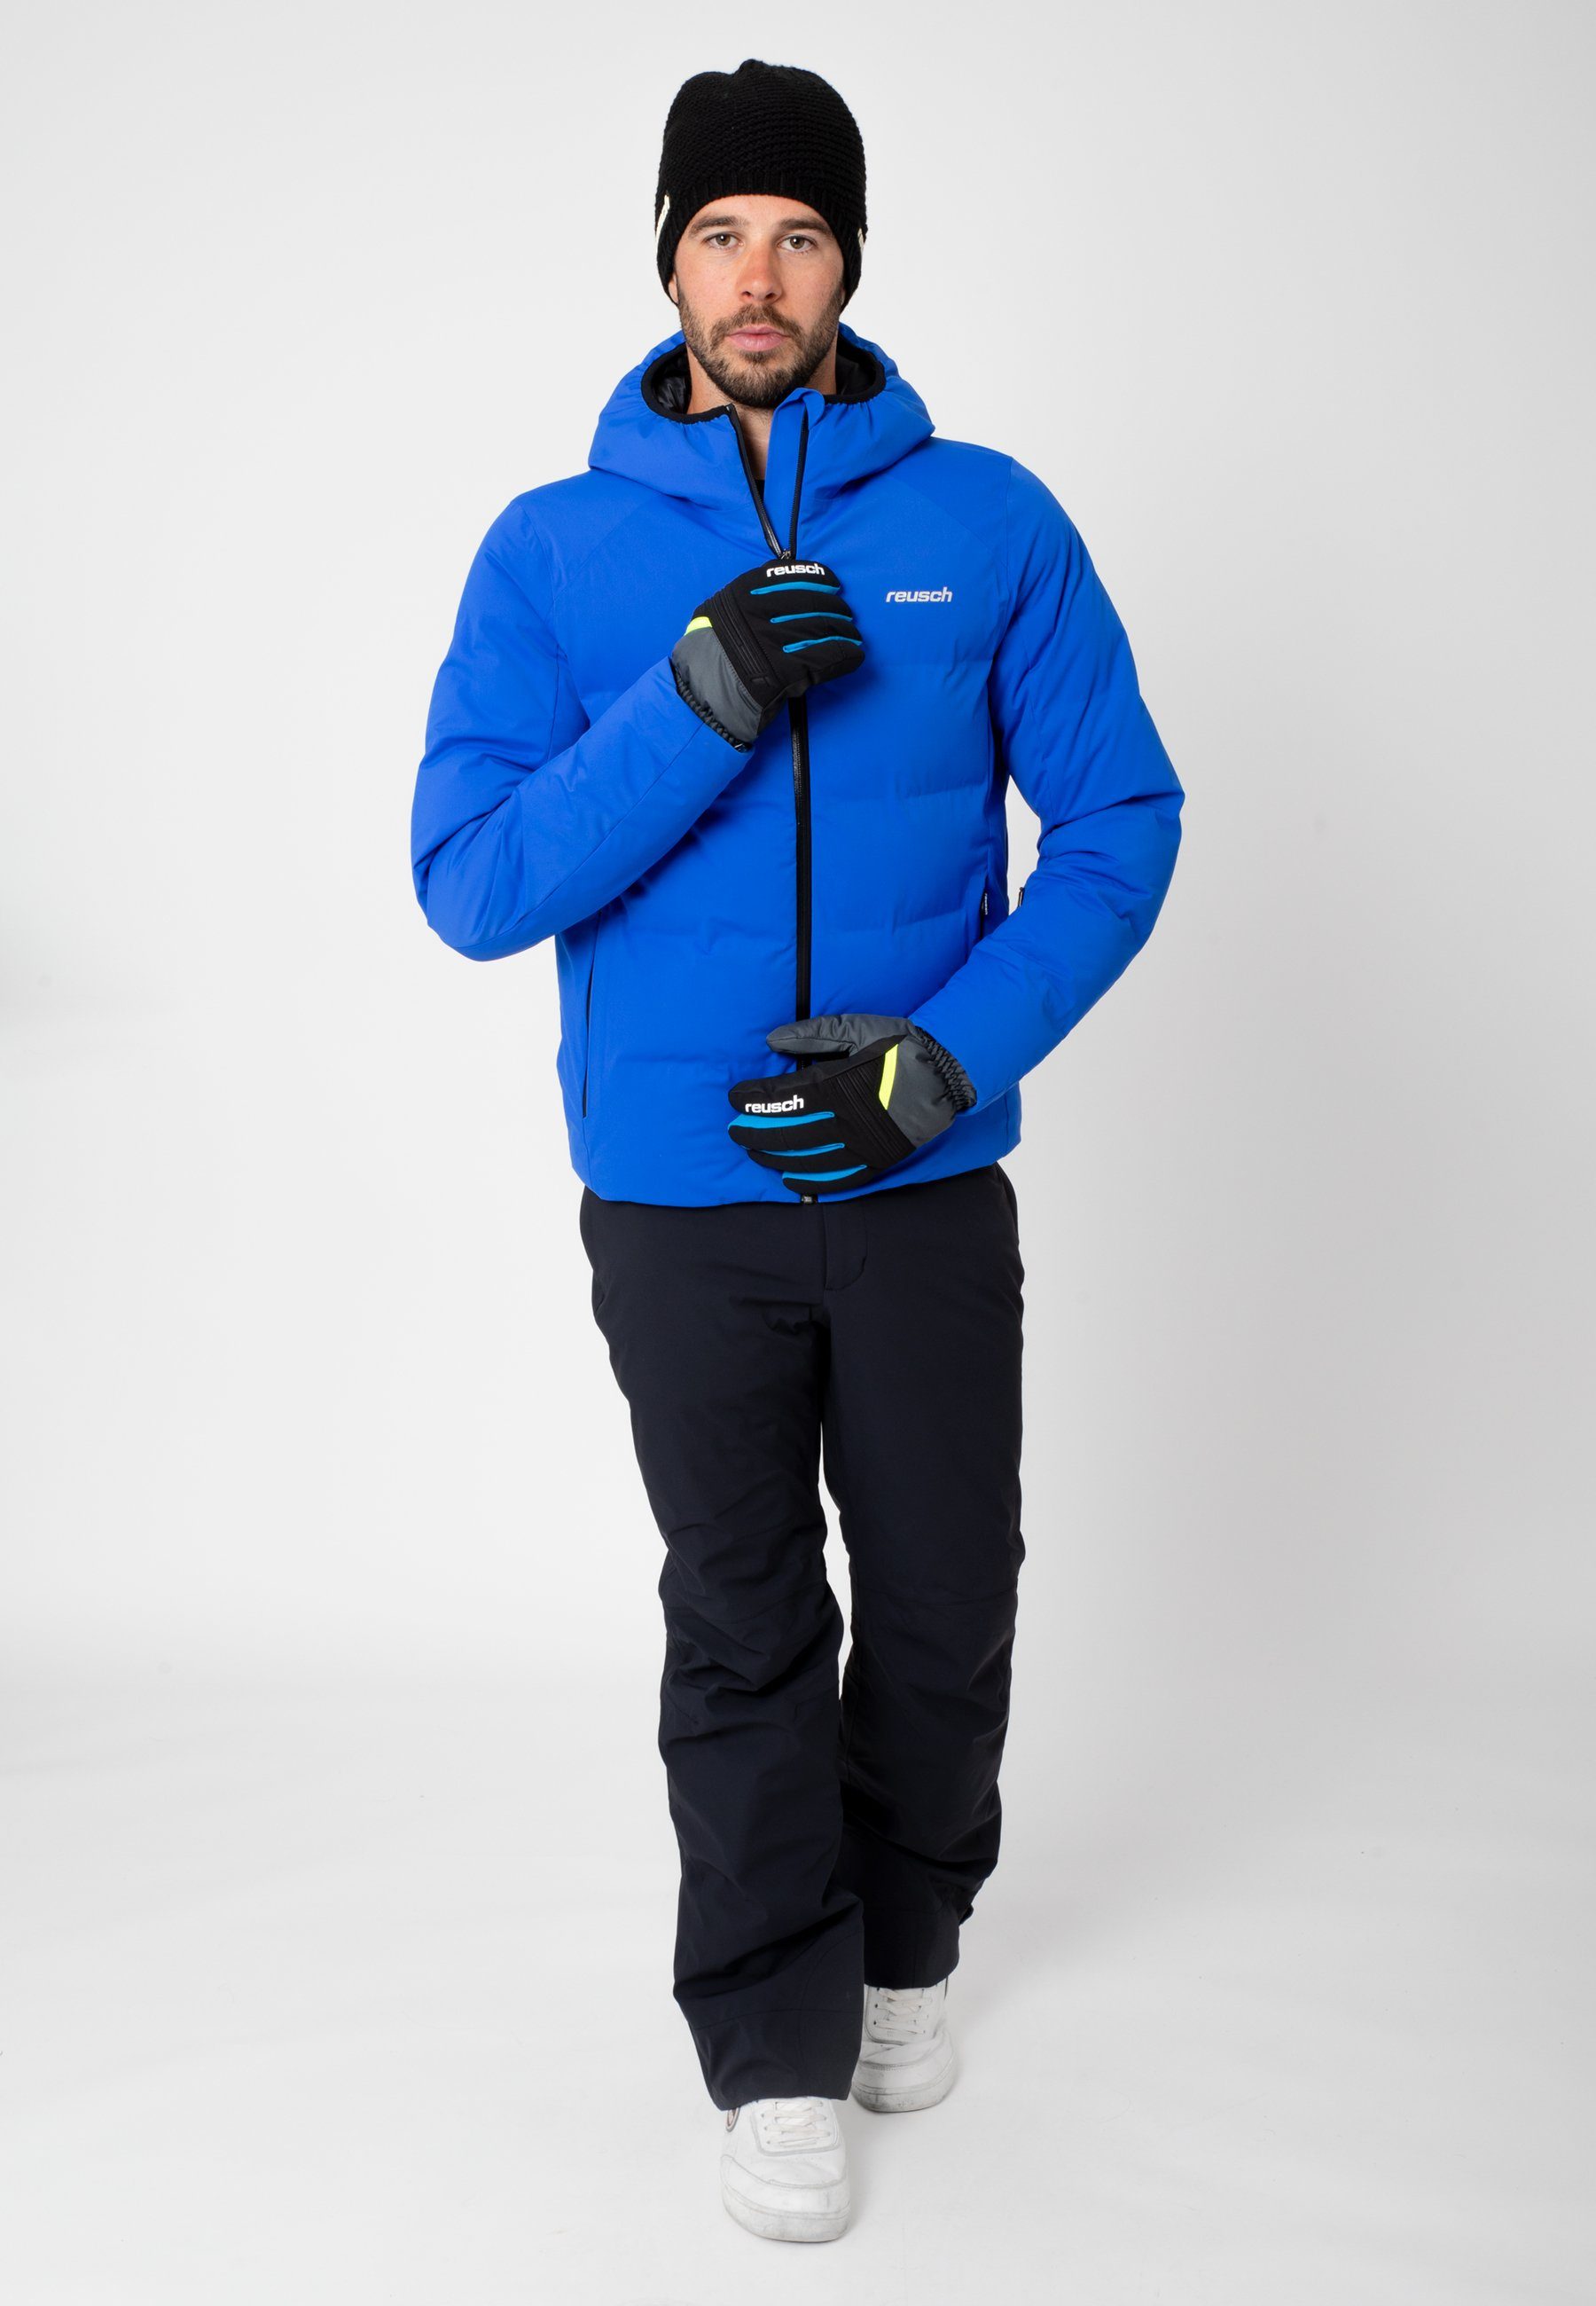 Baldo R-TEX Reusch Skihandschuhe XT grau-gelb wasserdicht warm und